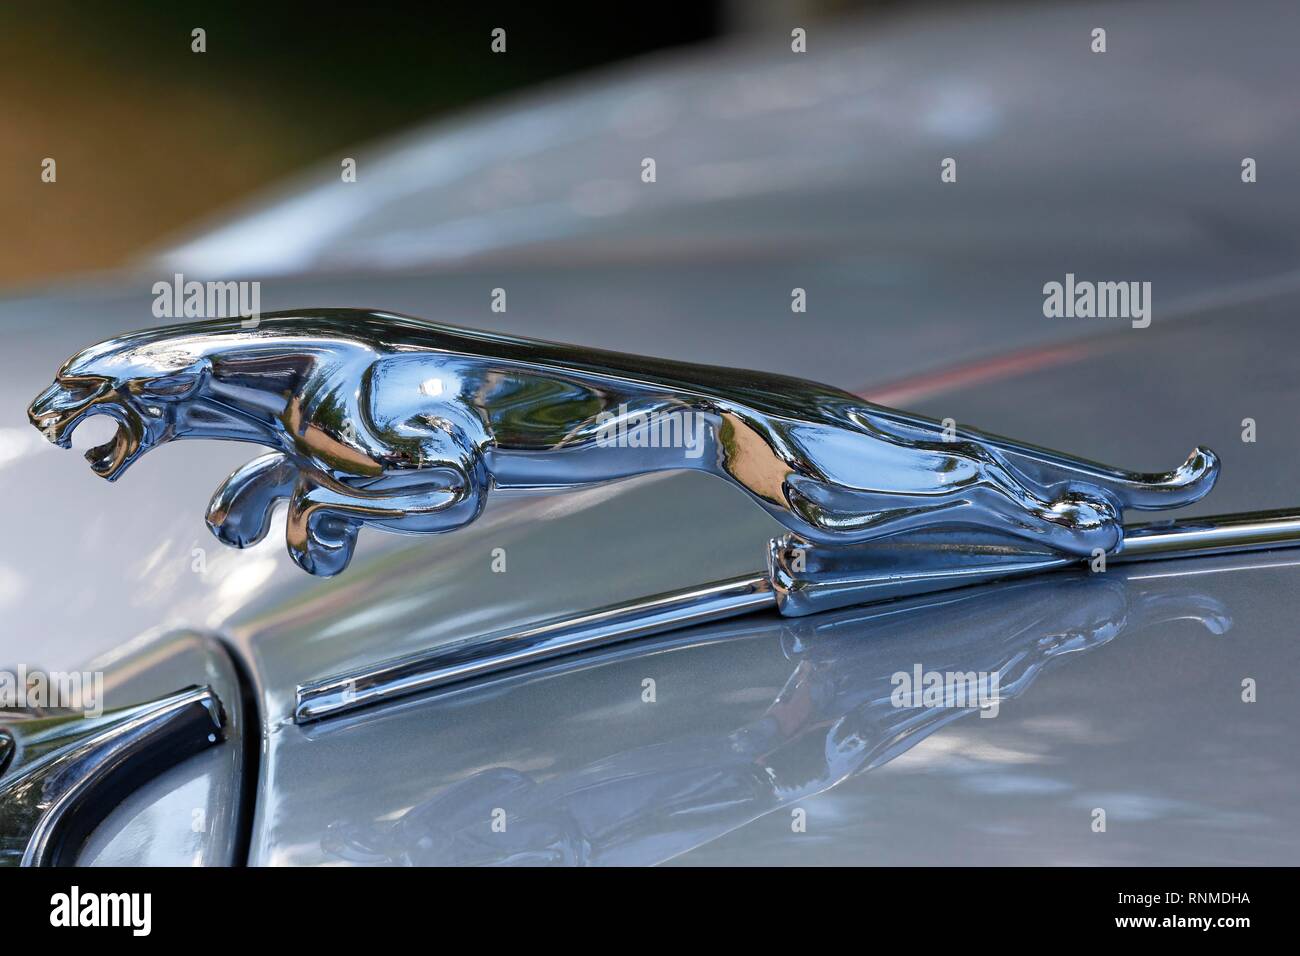 La figura del radiador sobre el capó del Jaguar Jaguar 3,8 litro oldtimer, vehículo histórico, Alemania Foto de stock